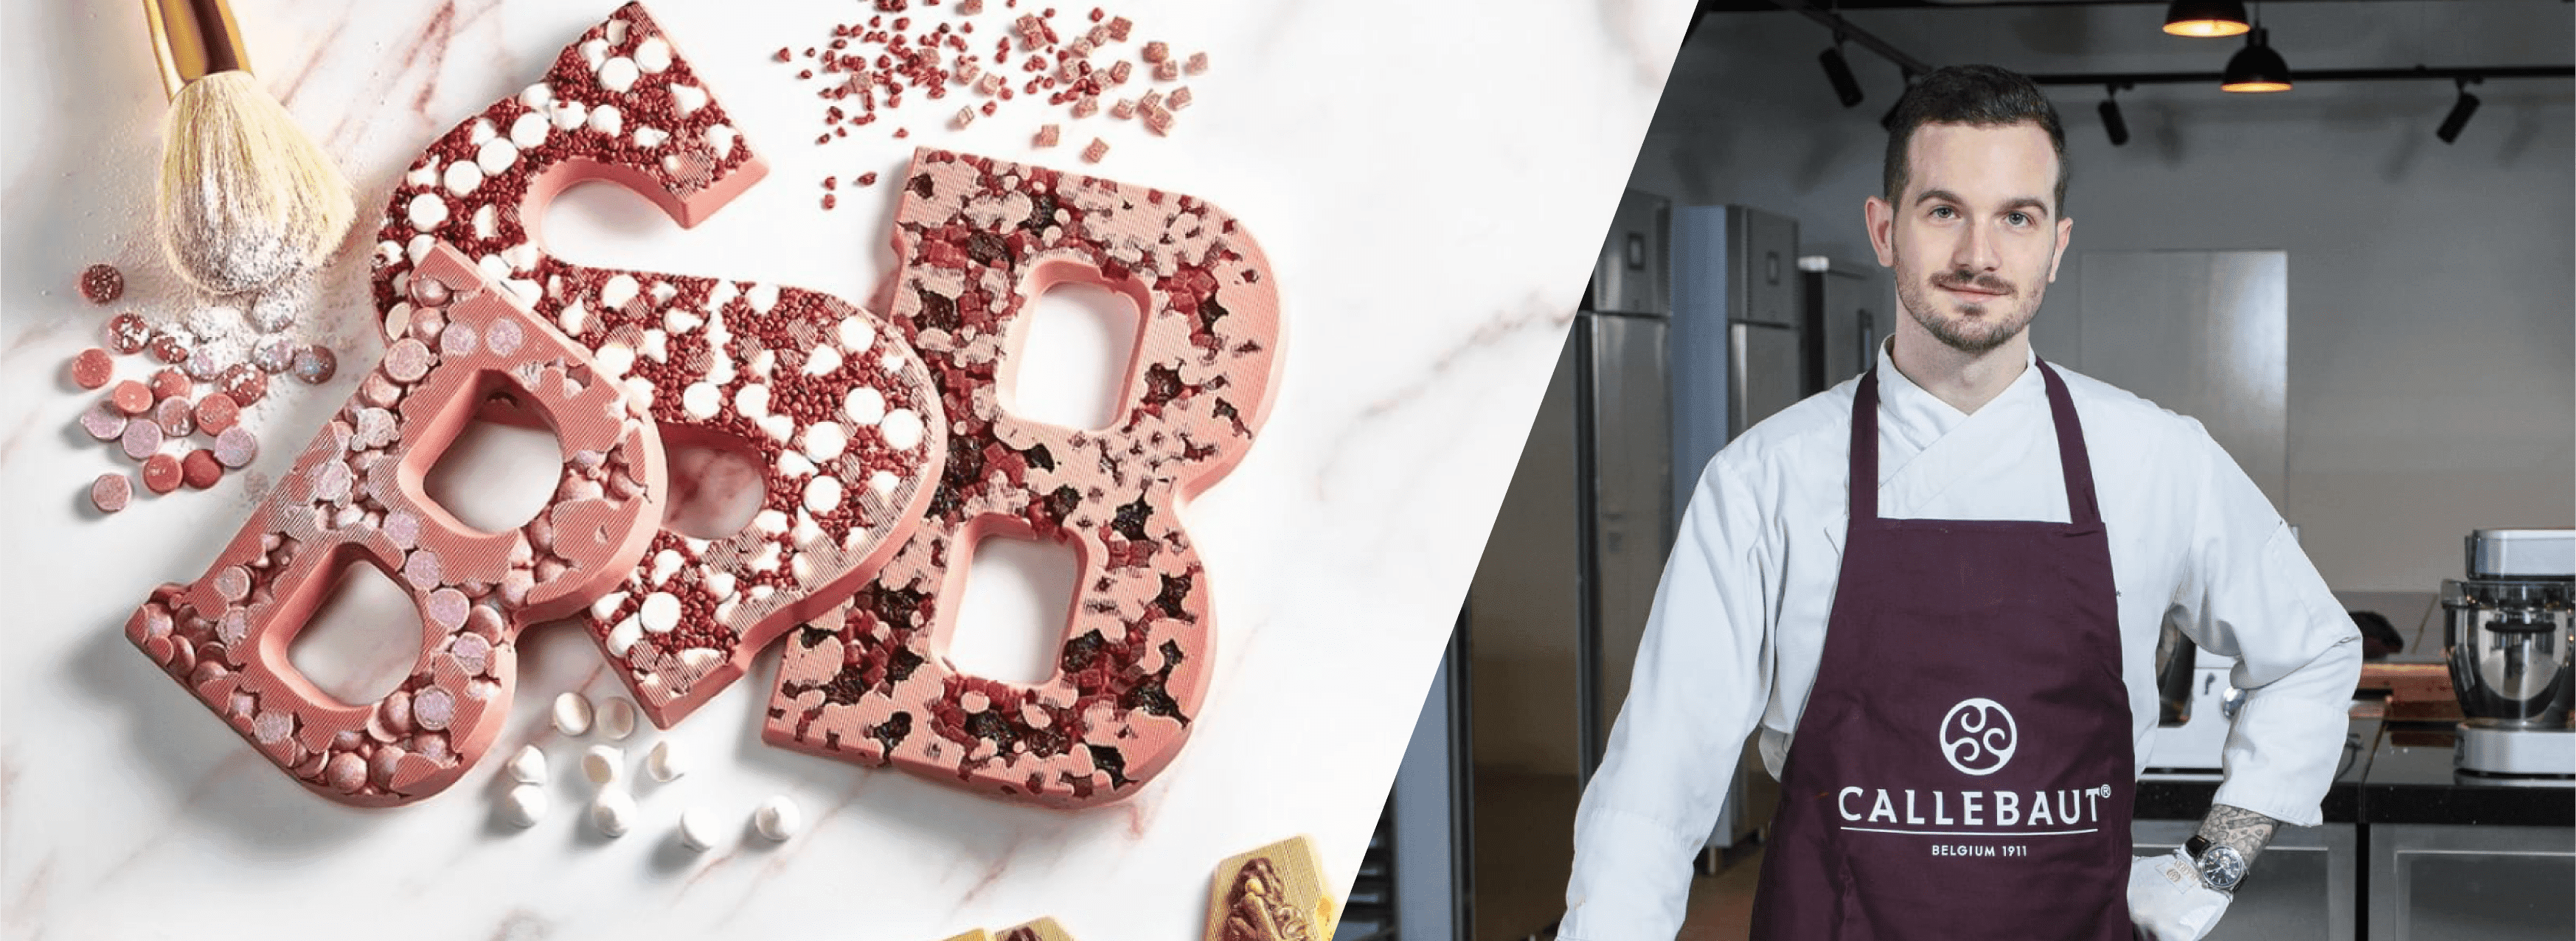 Мастер-класс «Летние десерты 2020». Callebaut